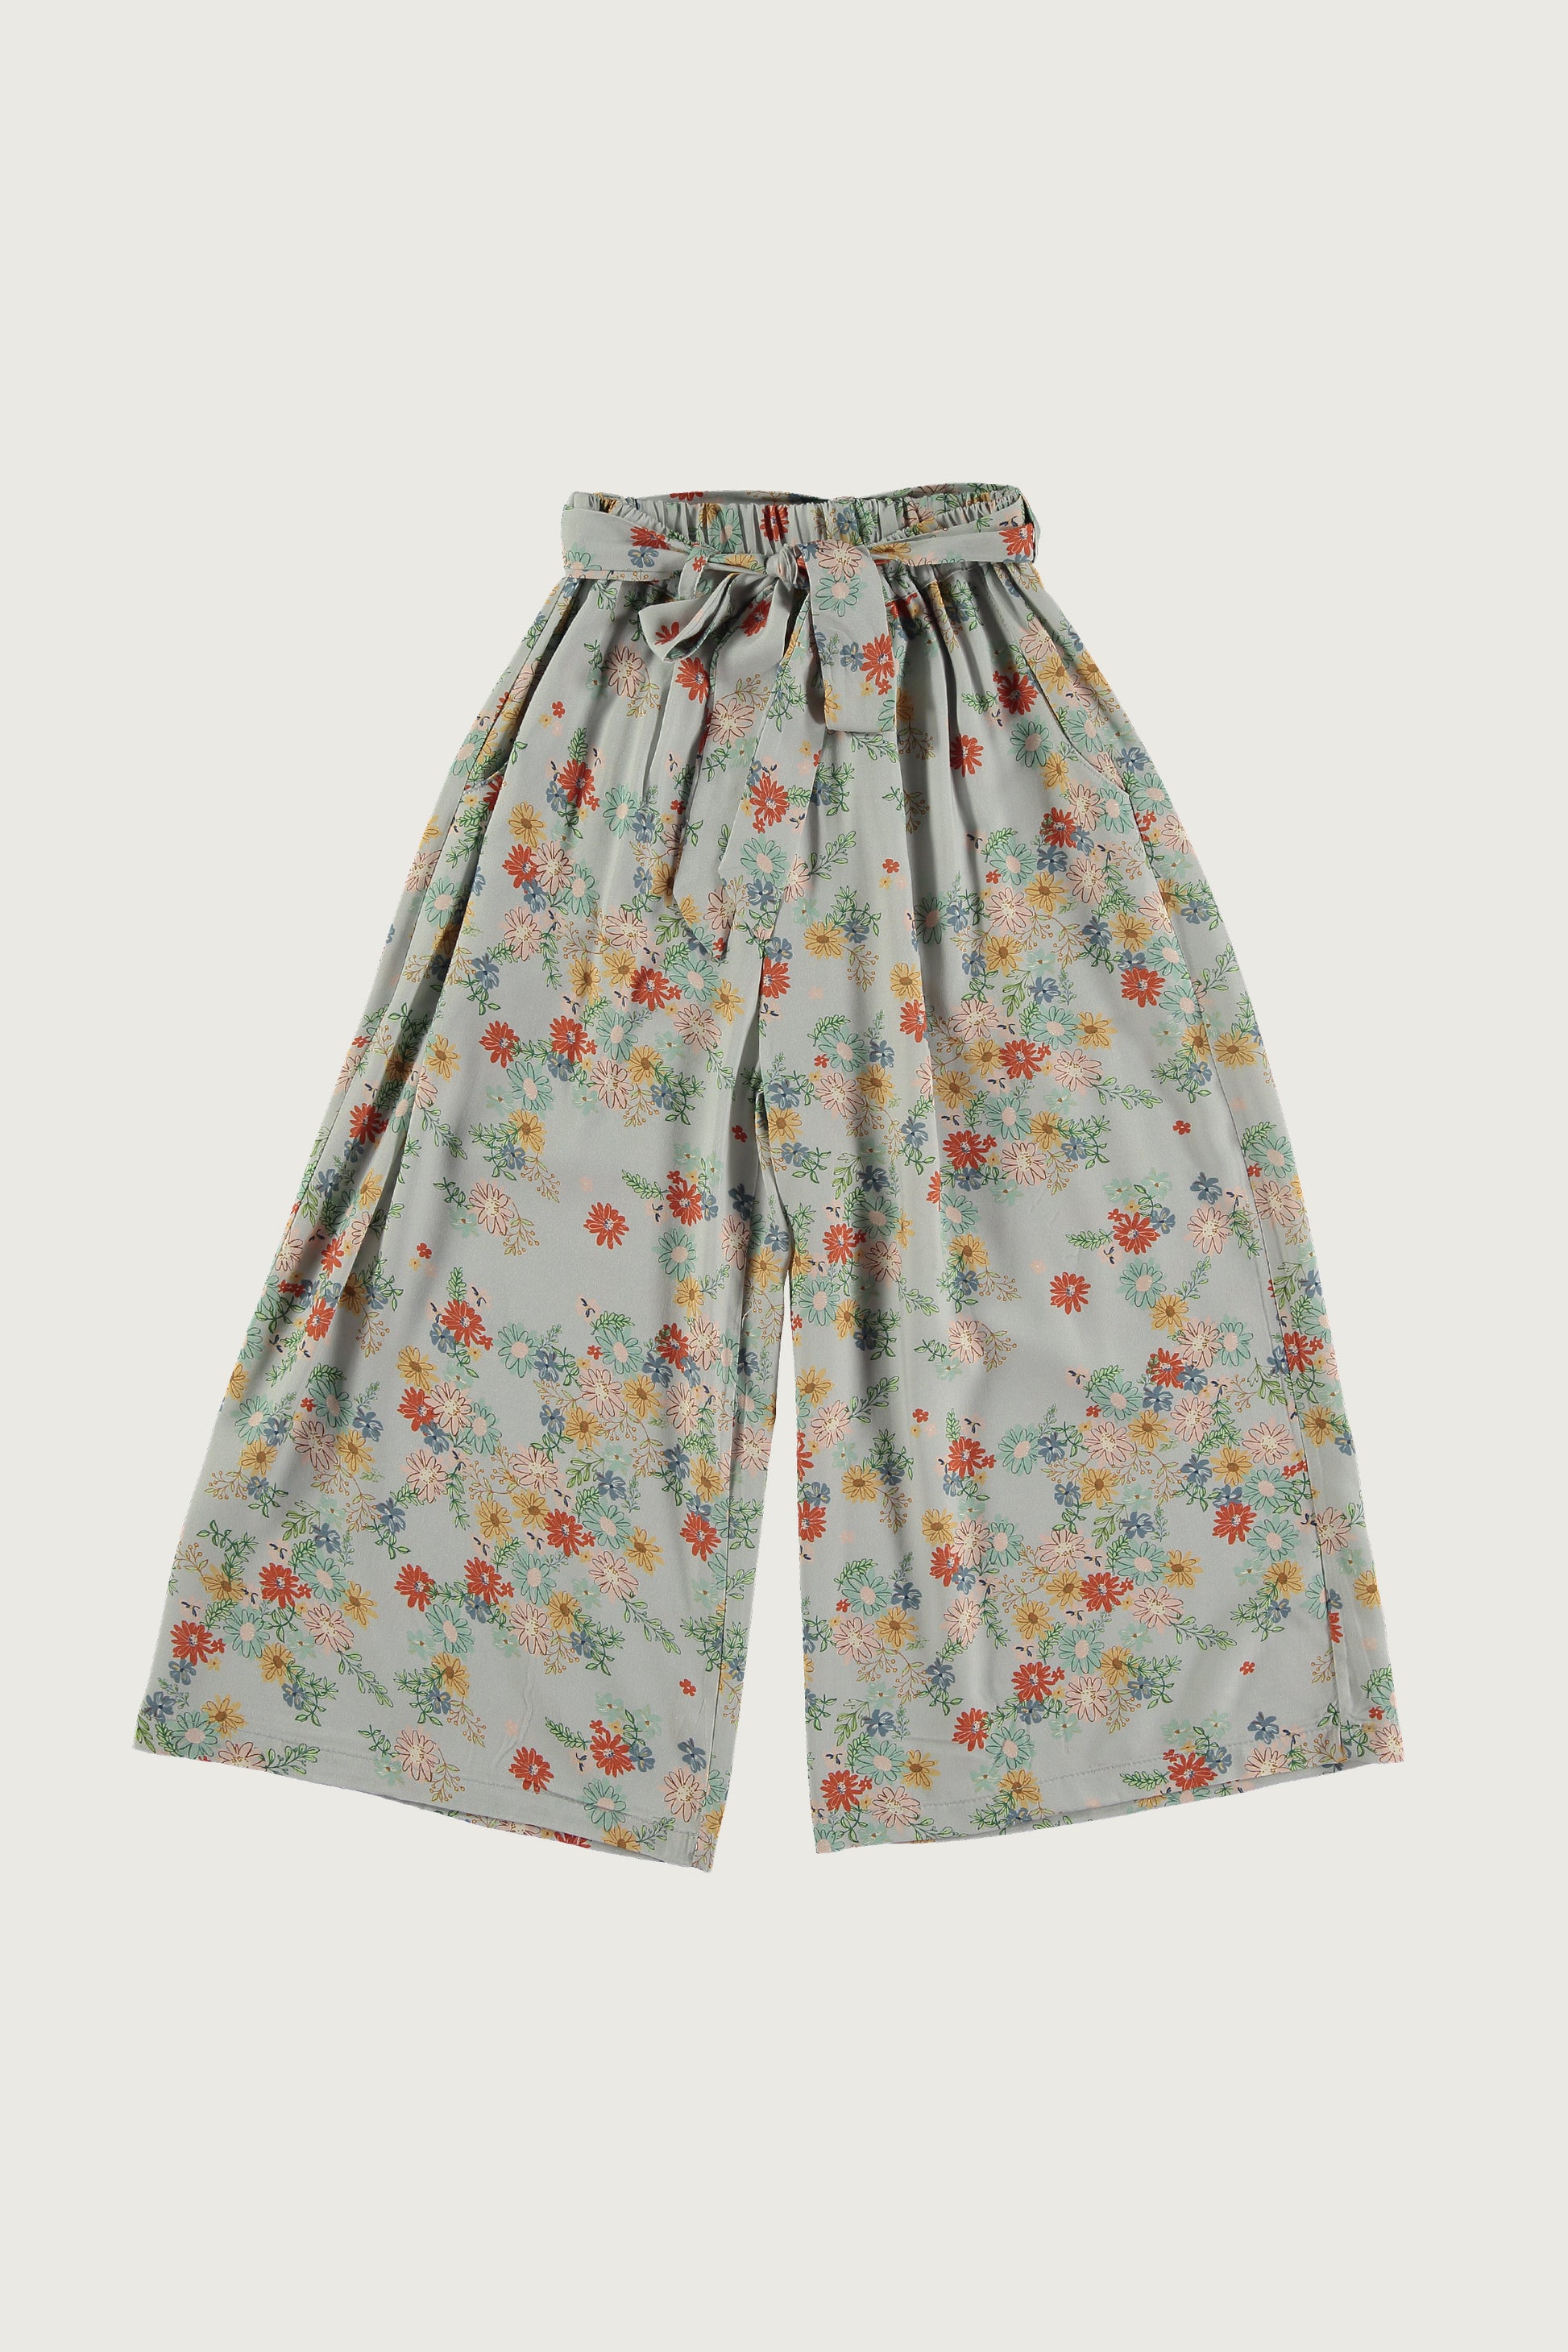 Coco Au Lait FLORAL CLOUDS TROUSERS Trousers Flora